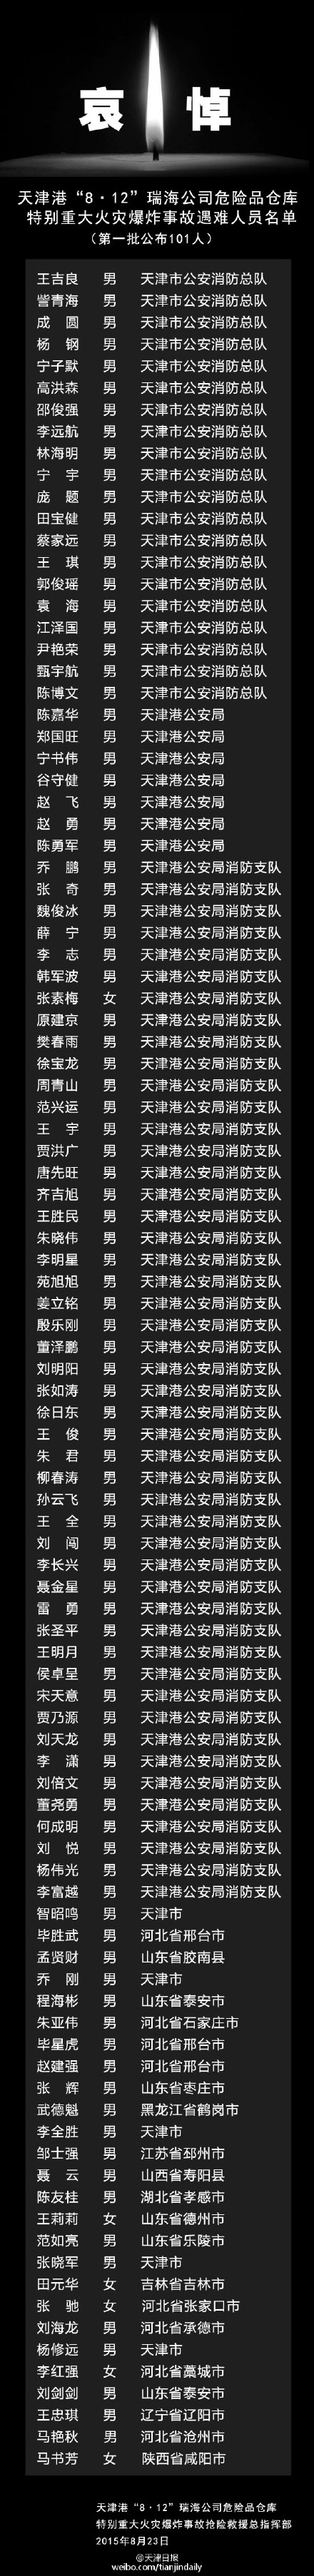 天津港爆炸事故165名遇难者名单全部公布（2）